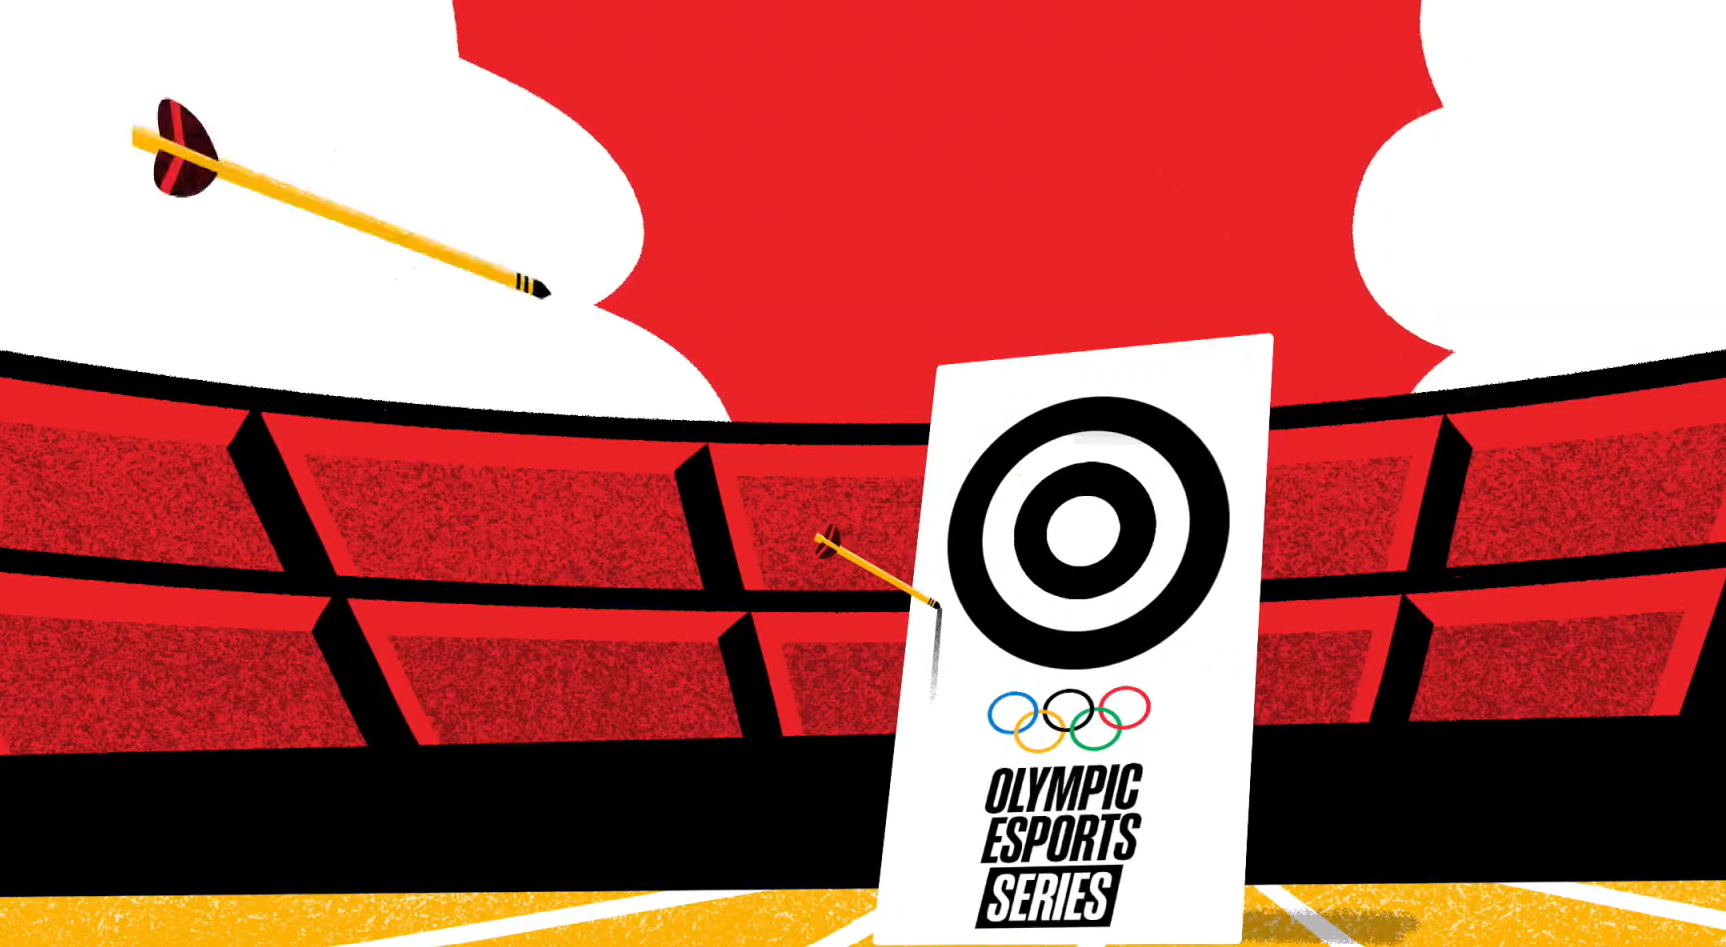 Para los Olímpicos de Esports de 2023 habrá nueve competencias. (COI)